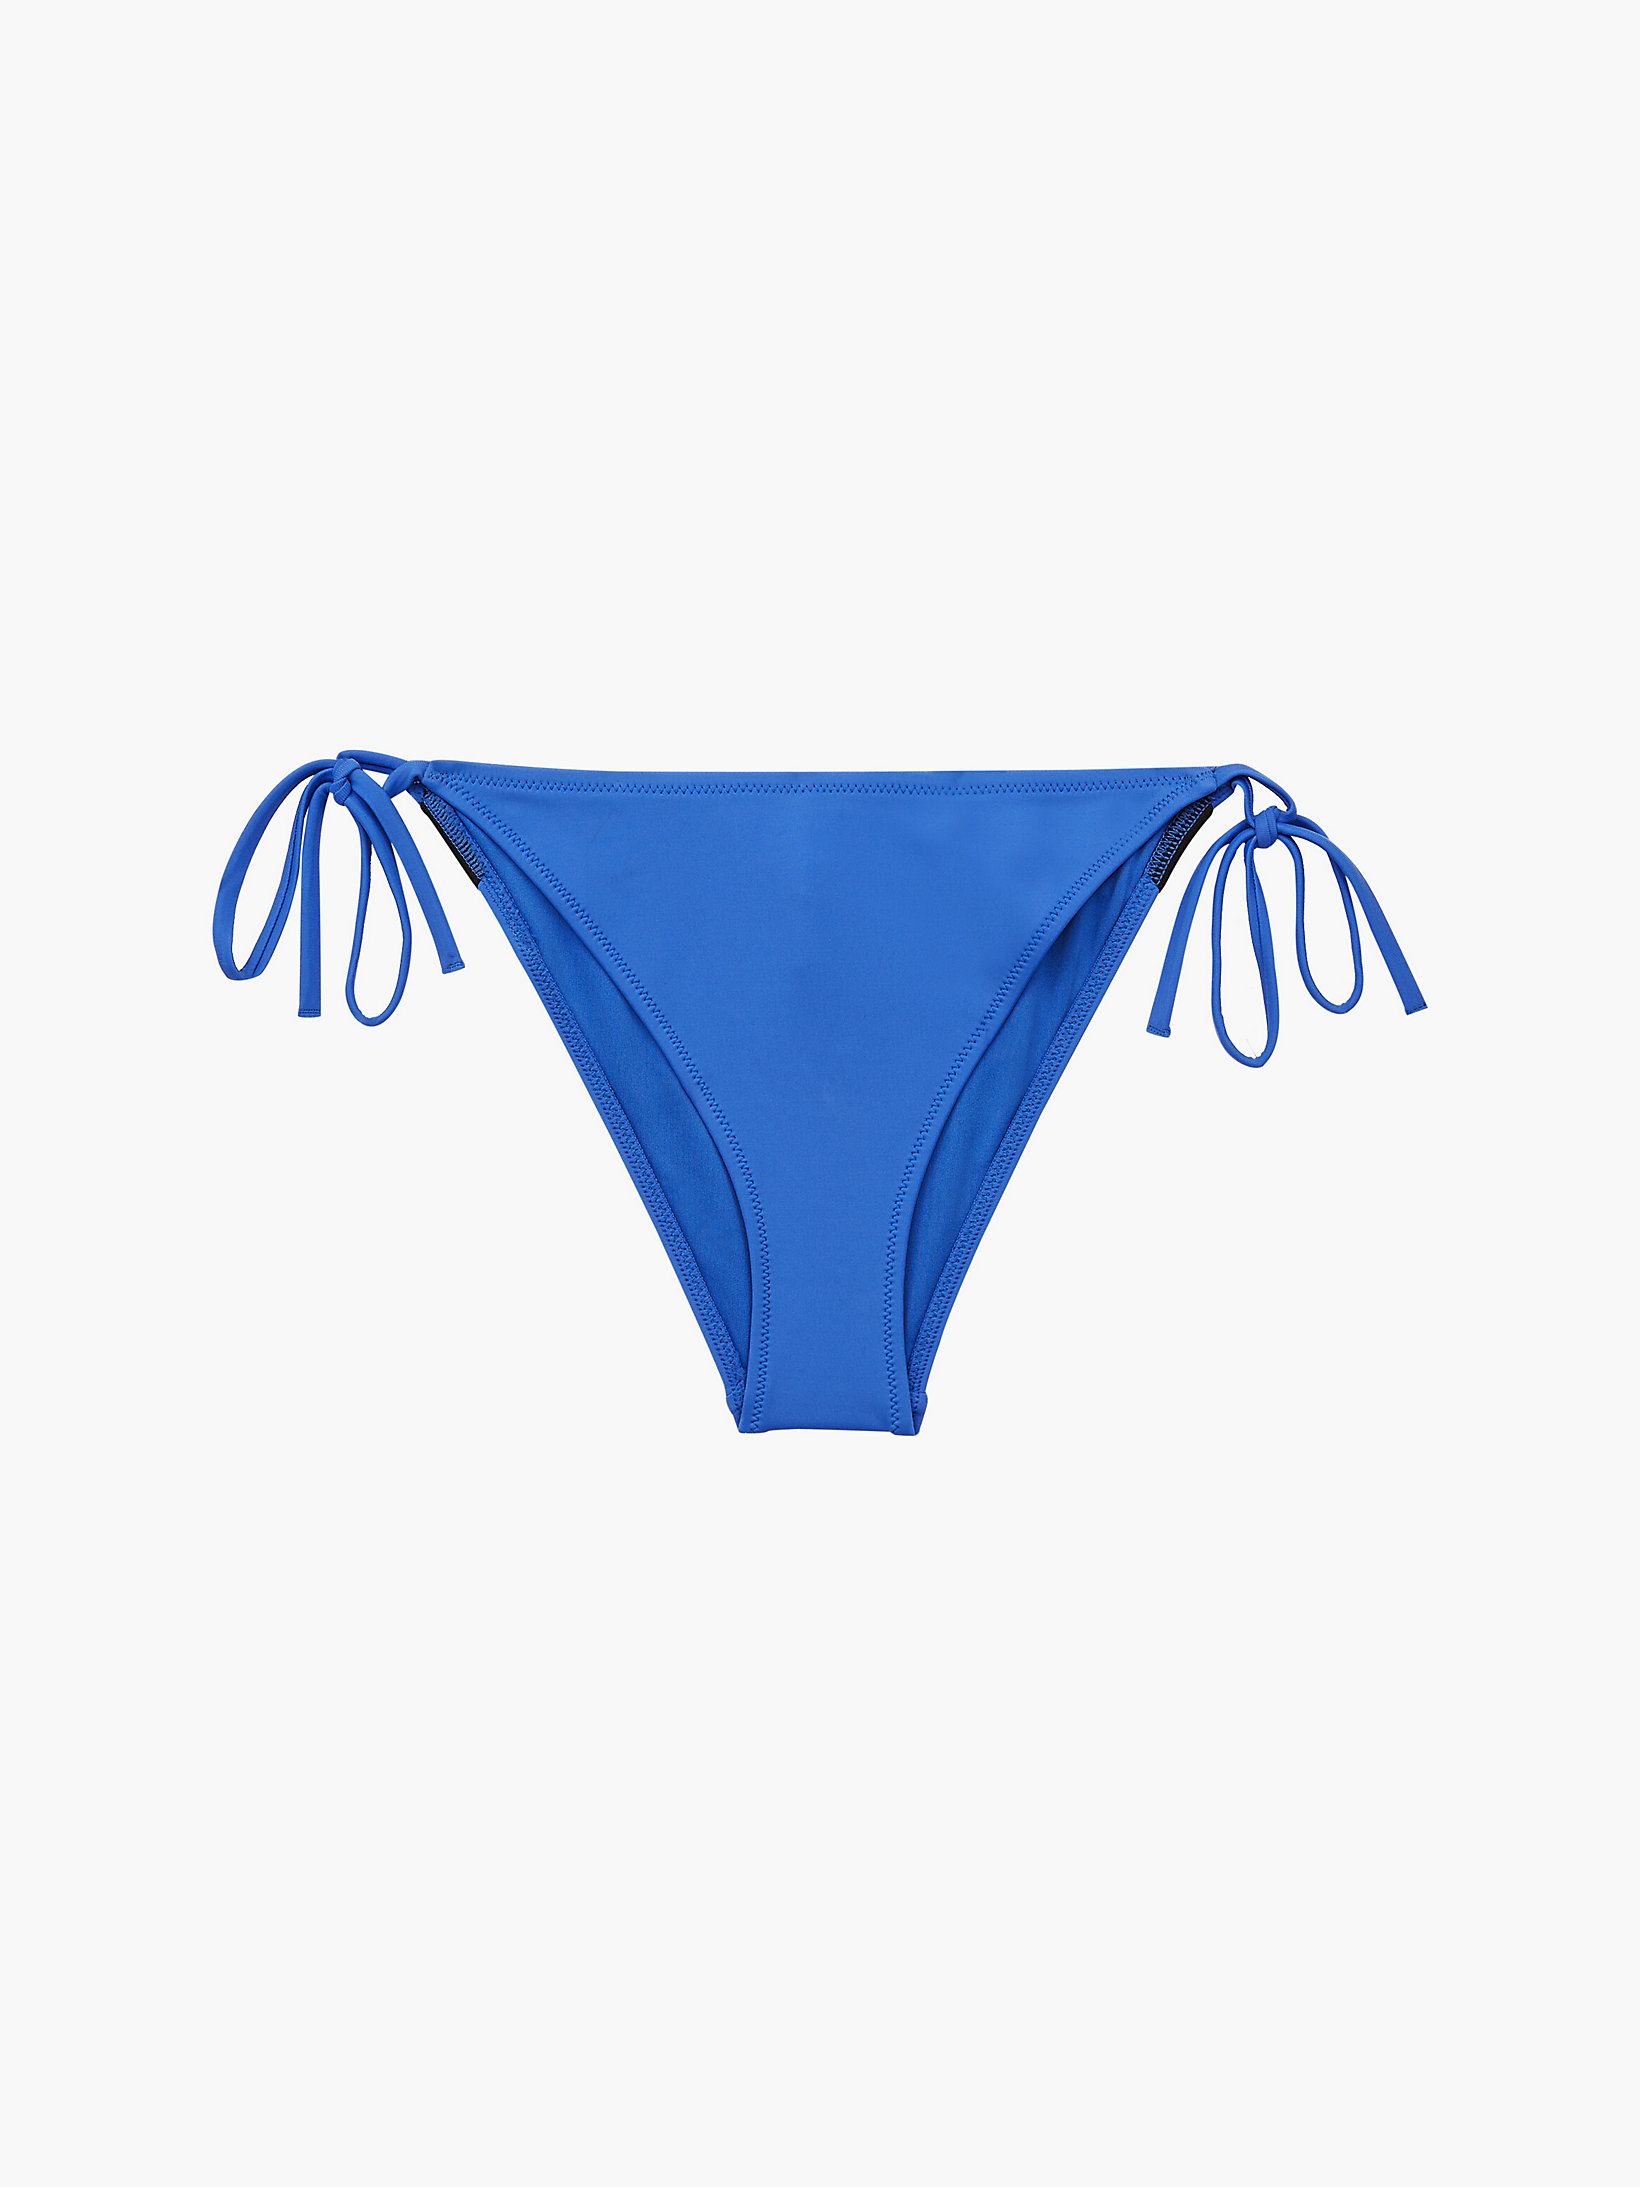 Wild Bluebell Tie Side Bikini Bottom - Intense Power undefined women Calvin Klein